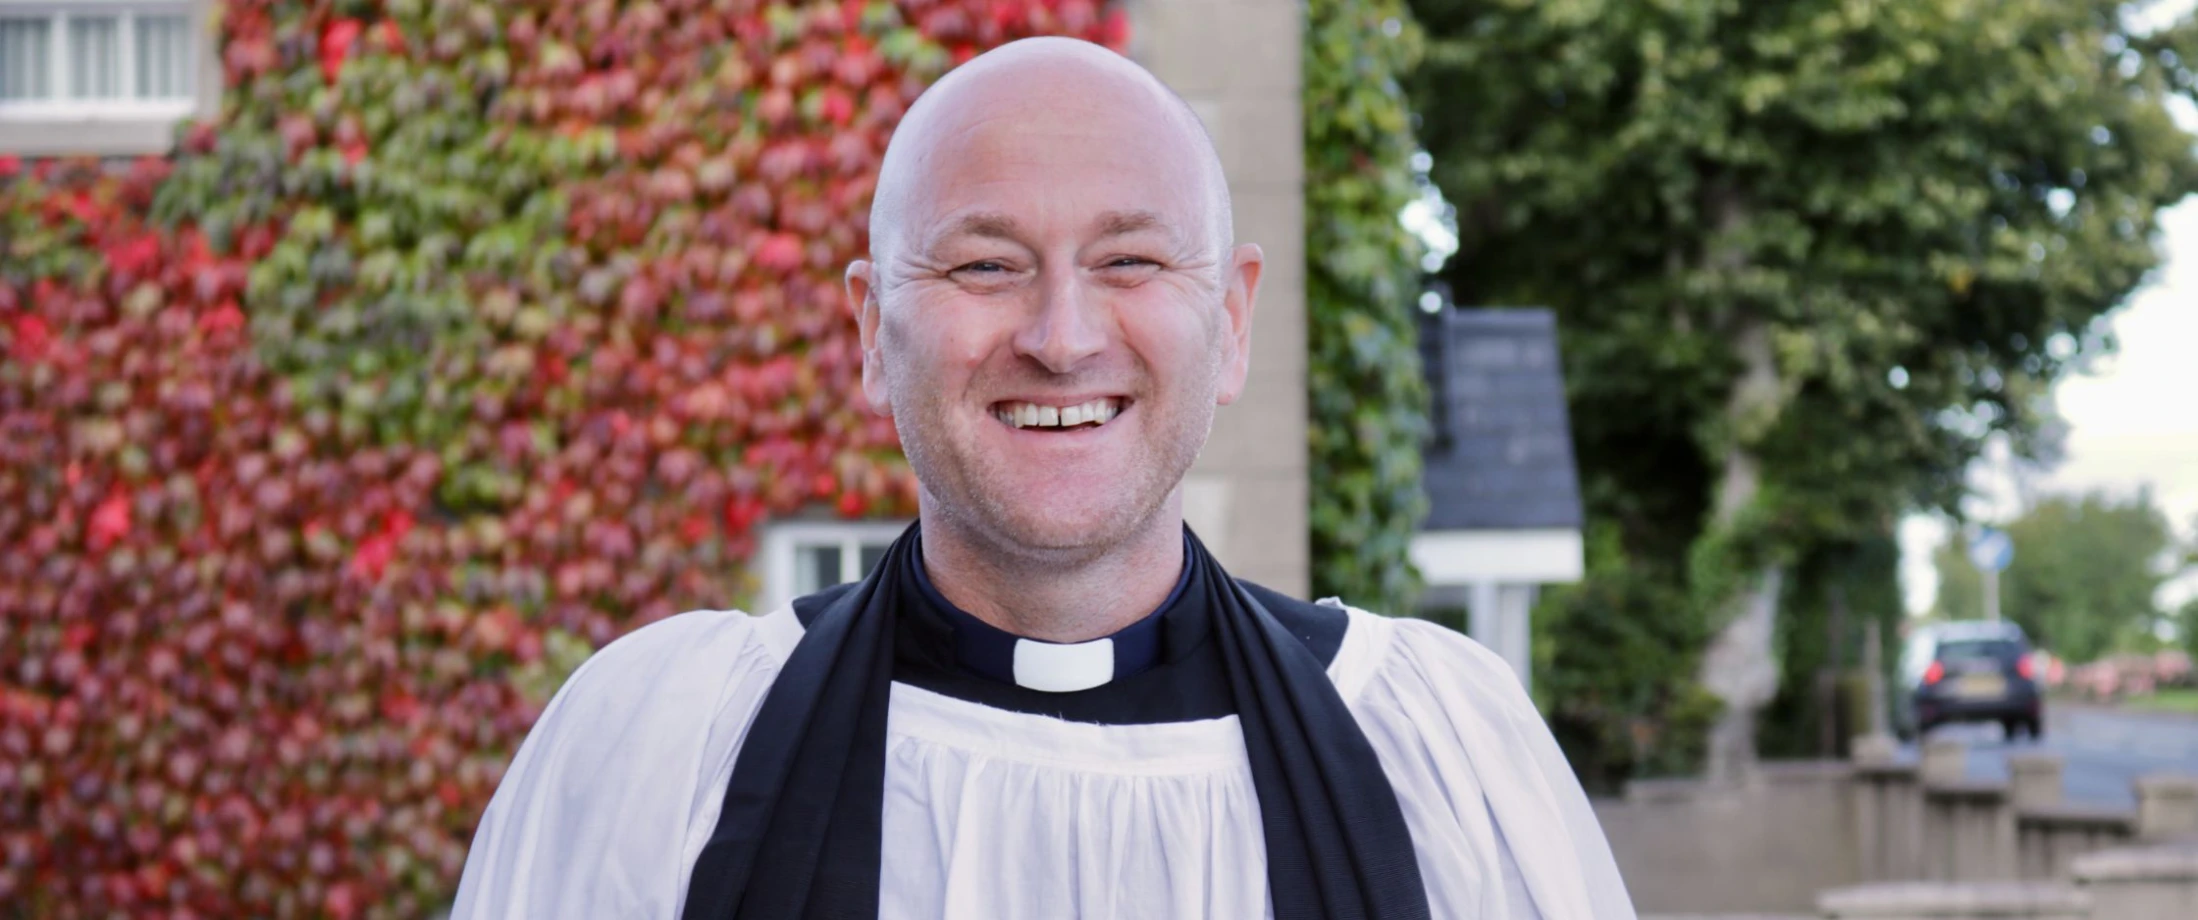 Revd Ross Munro is ordained (OLM) presbyter